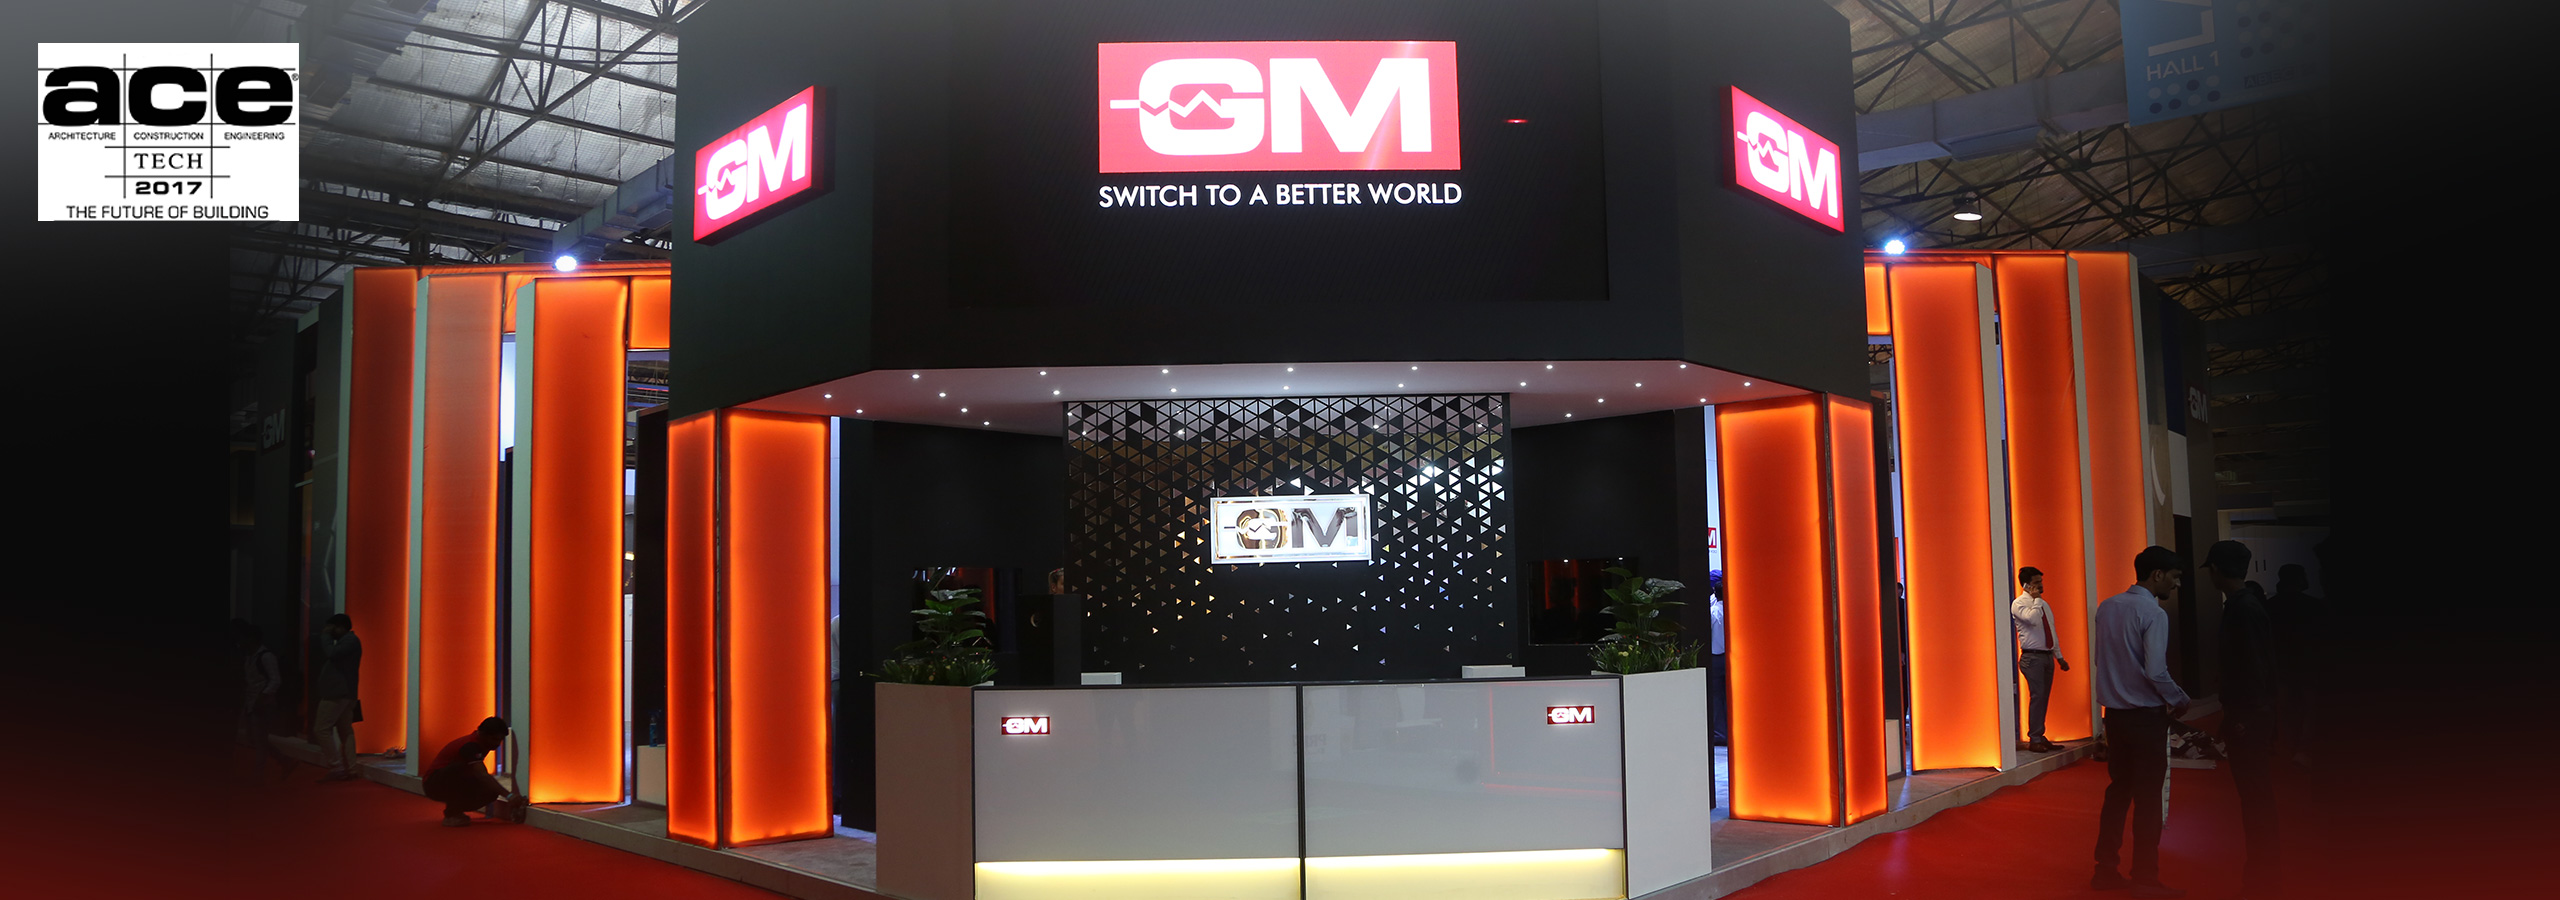 GM at AceTech Delhi 2017, Graceful as ever